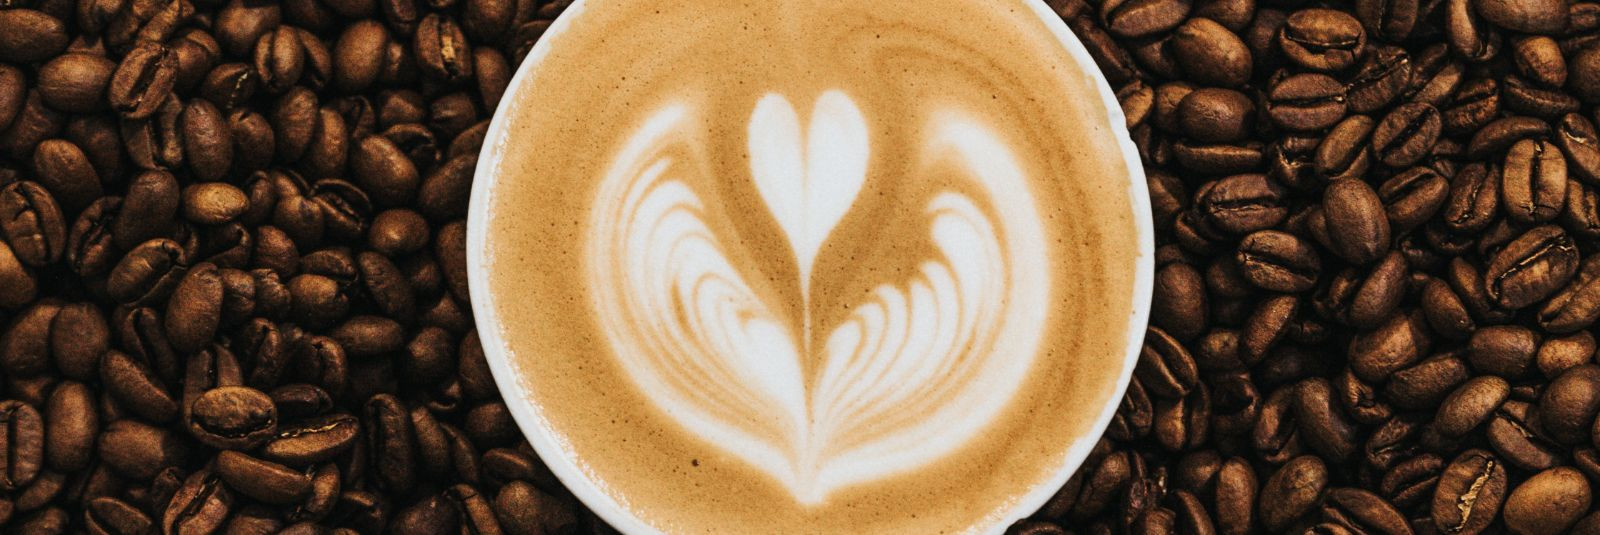 Kas soovite hommikust ärkamist nautida maitseva kohvitassi saatel või pakute oma klientidele kontoris värskelt röstitud kohvi naudingut? Siis olete jõudnud õige